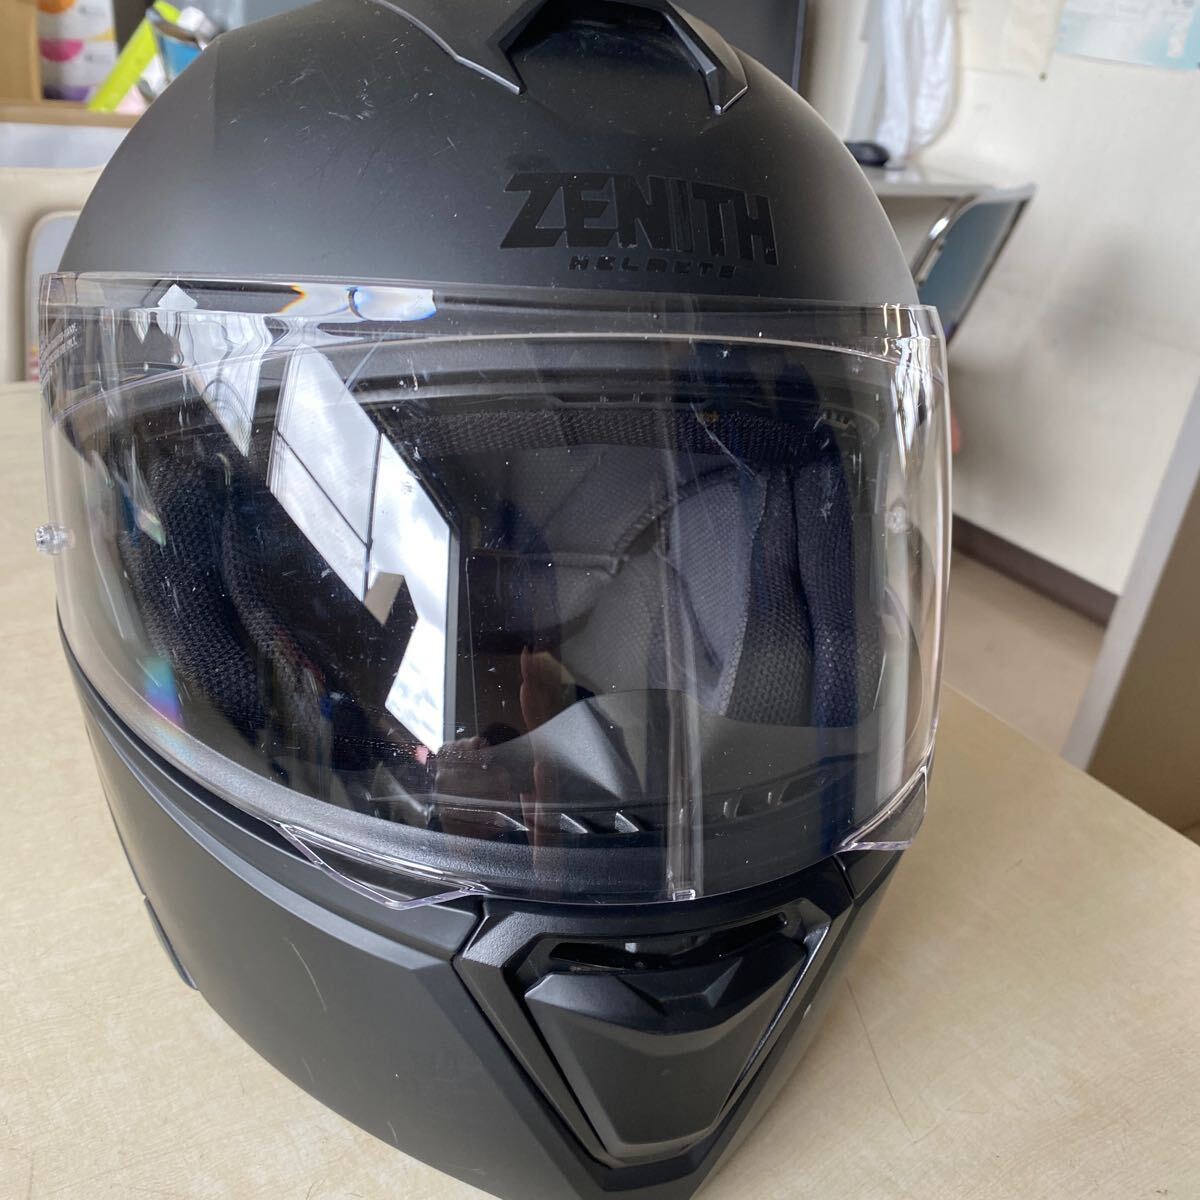 ヤマハ フルフェイス ヘルメット ZENITH YJ-21 Lサイズ ブラックの画像1